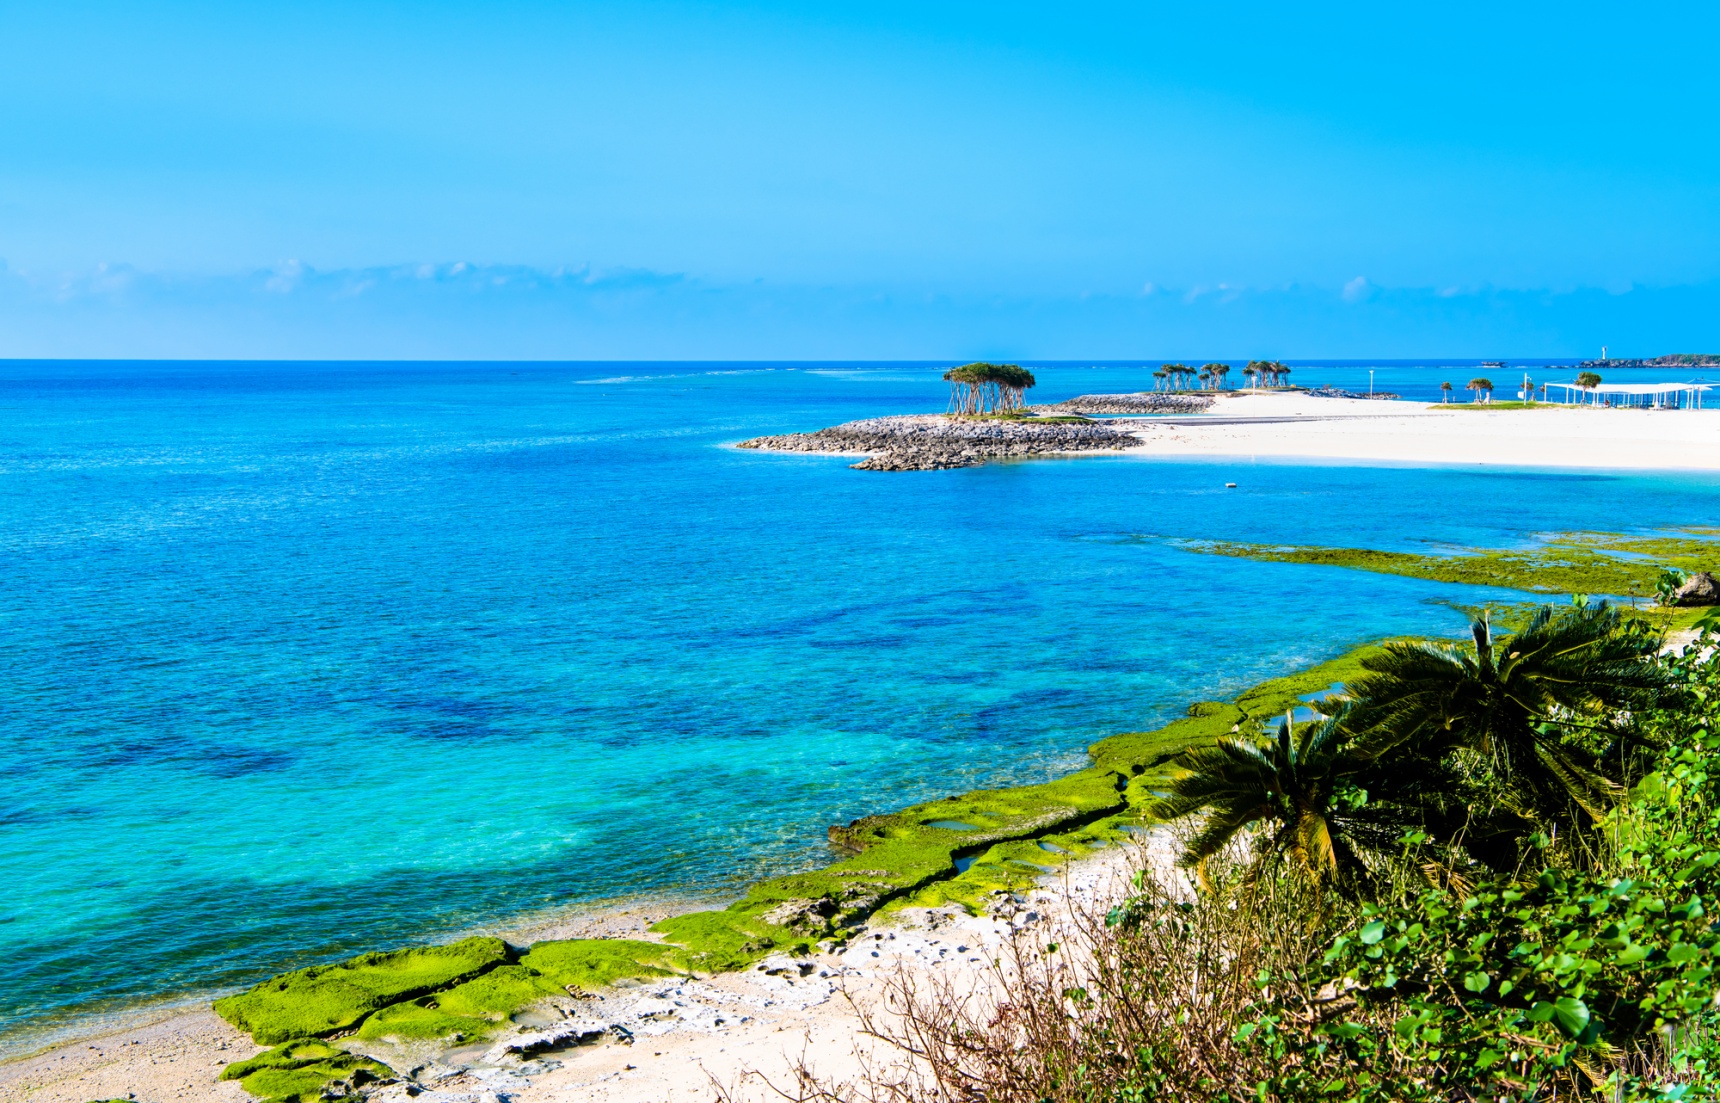 【沖繩自由行】米其林日本綠色指南榜上有名的沖繩必去5大景點